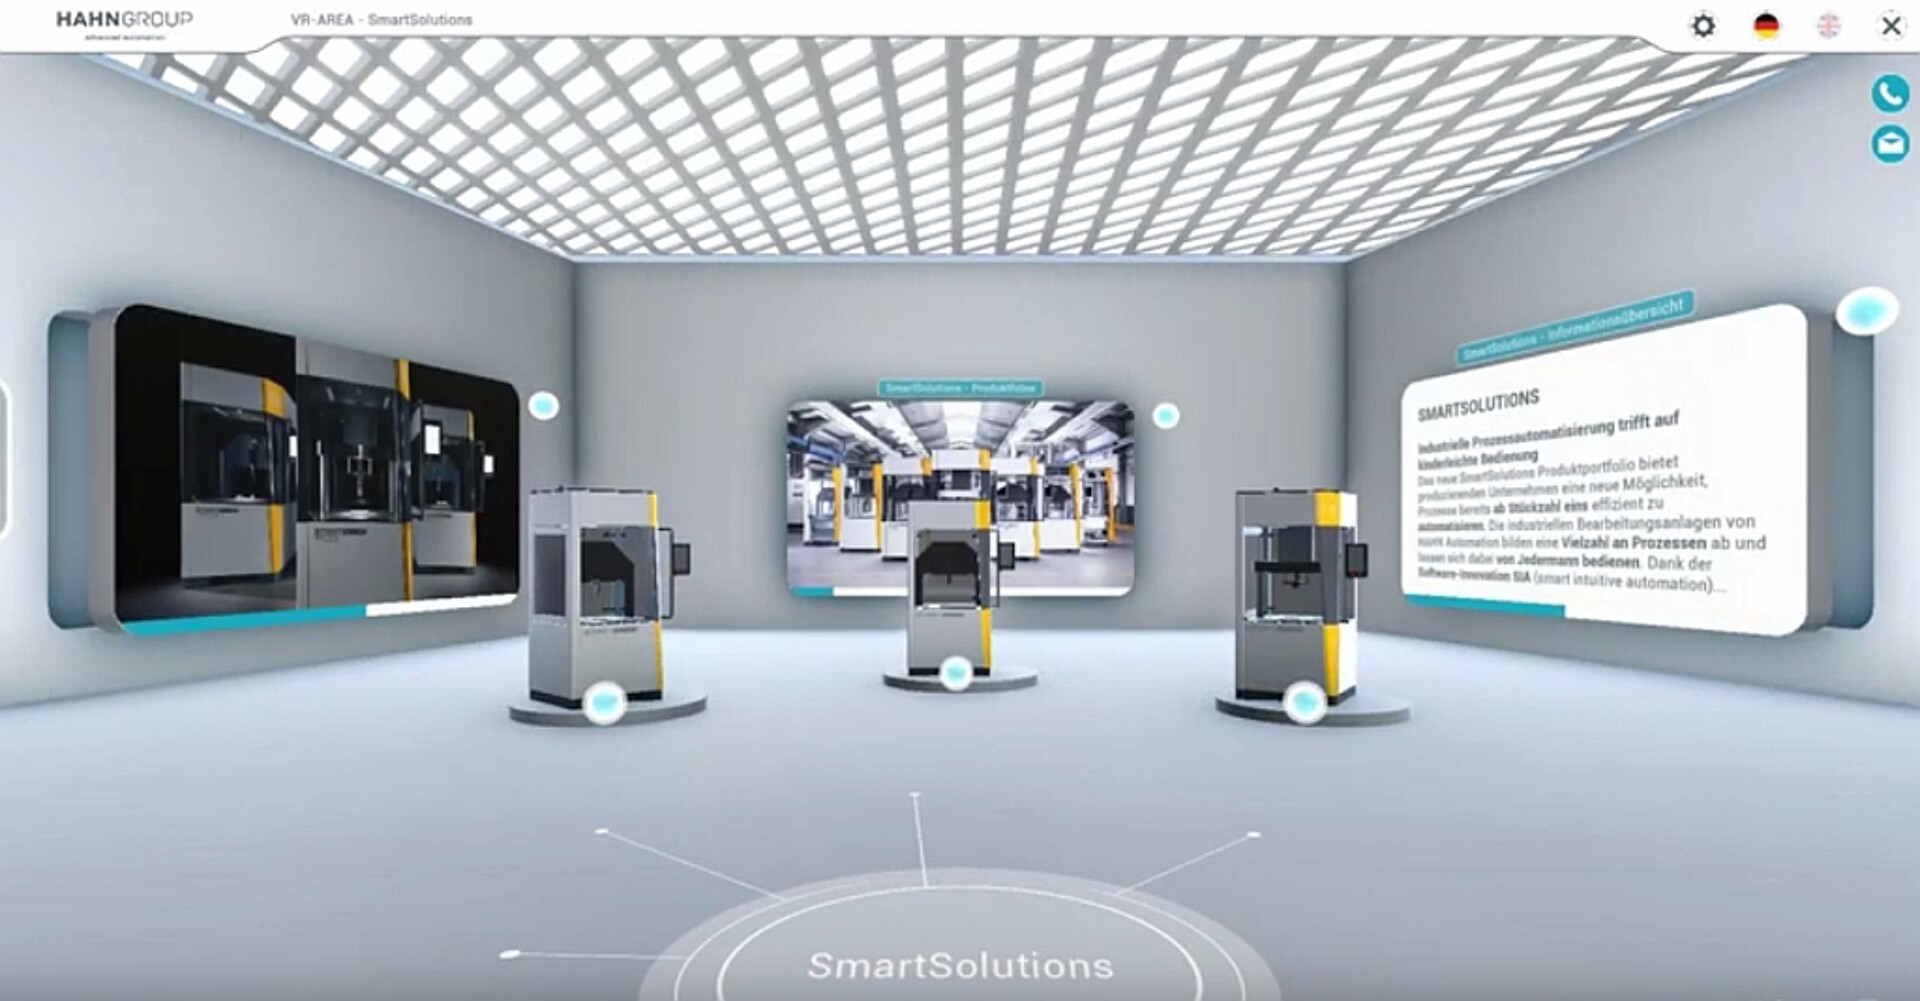 Der Showroom bietet animierte 3D-Modelle von Automatisierungsanlagen und Roboterlösungen. (Abb.: Hahn Group)